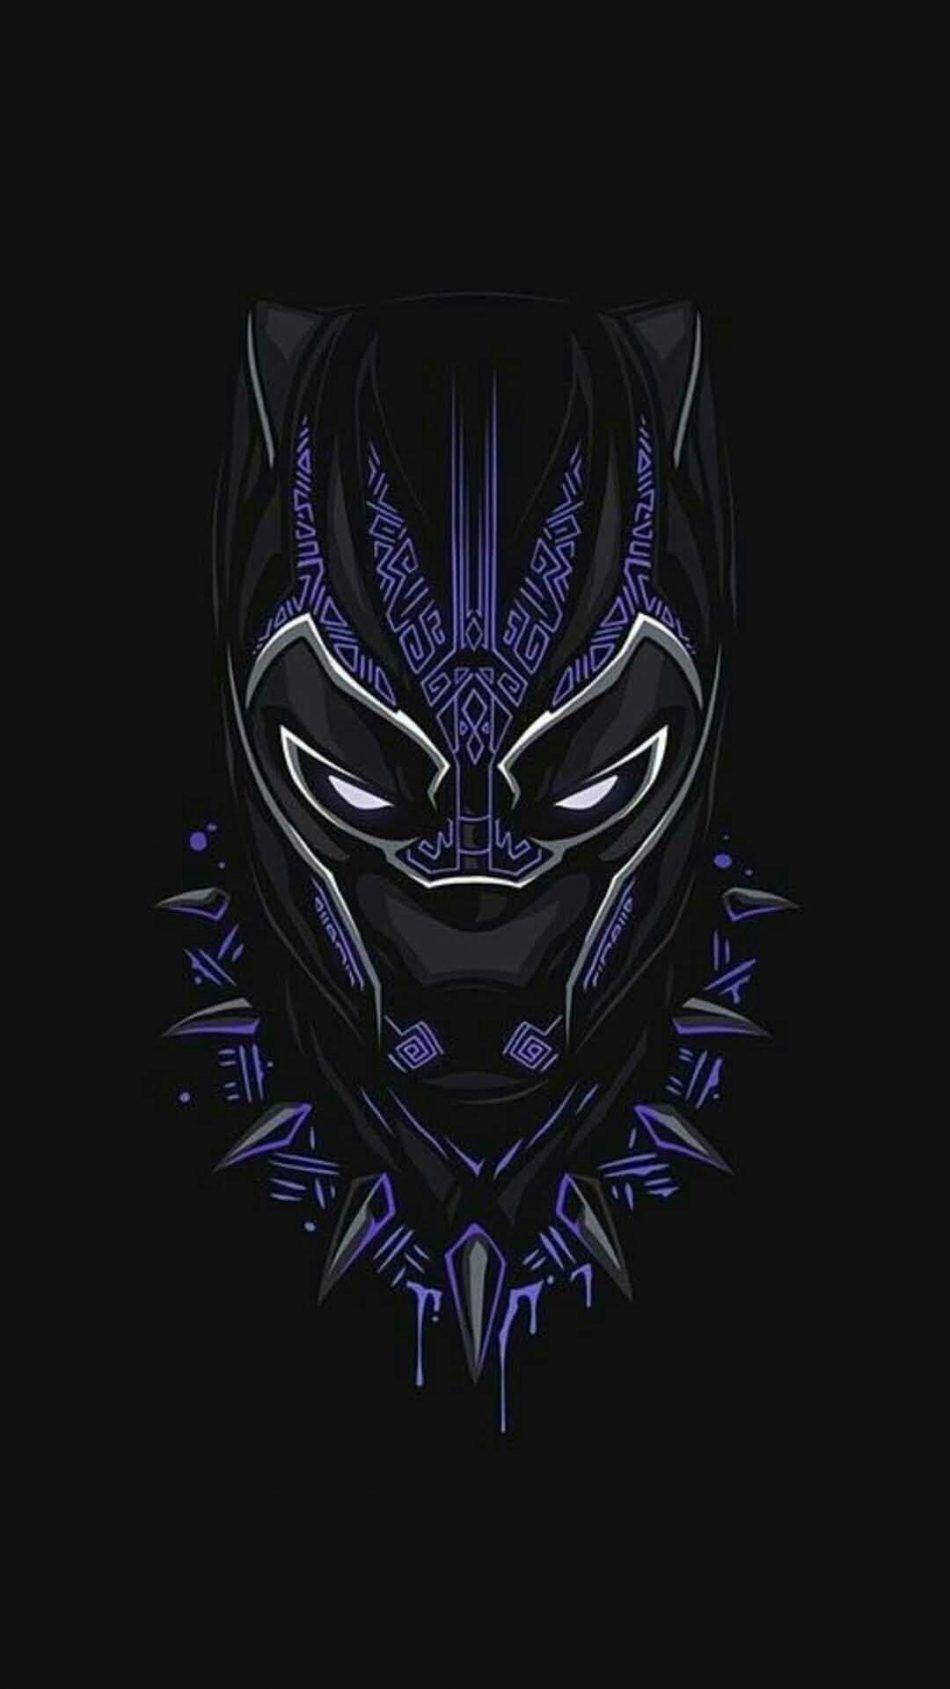 Hình nền đen Black Panther sẽ đưa bạn vào thế giới tuyệt vời của siêu anh hùng Black Panther. Ghi lại hình ảnh mãnh liệt của Black Panther với các chi tiết đầy chất lượng và sinh động, các hình nền sẽ tạo nên một không khí đầy màu sắc cho desktop hay điện thoại của bạn.